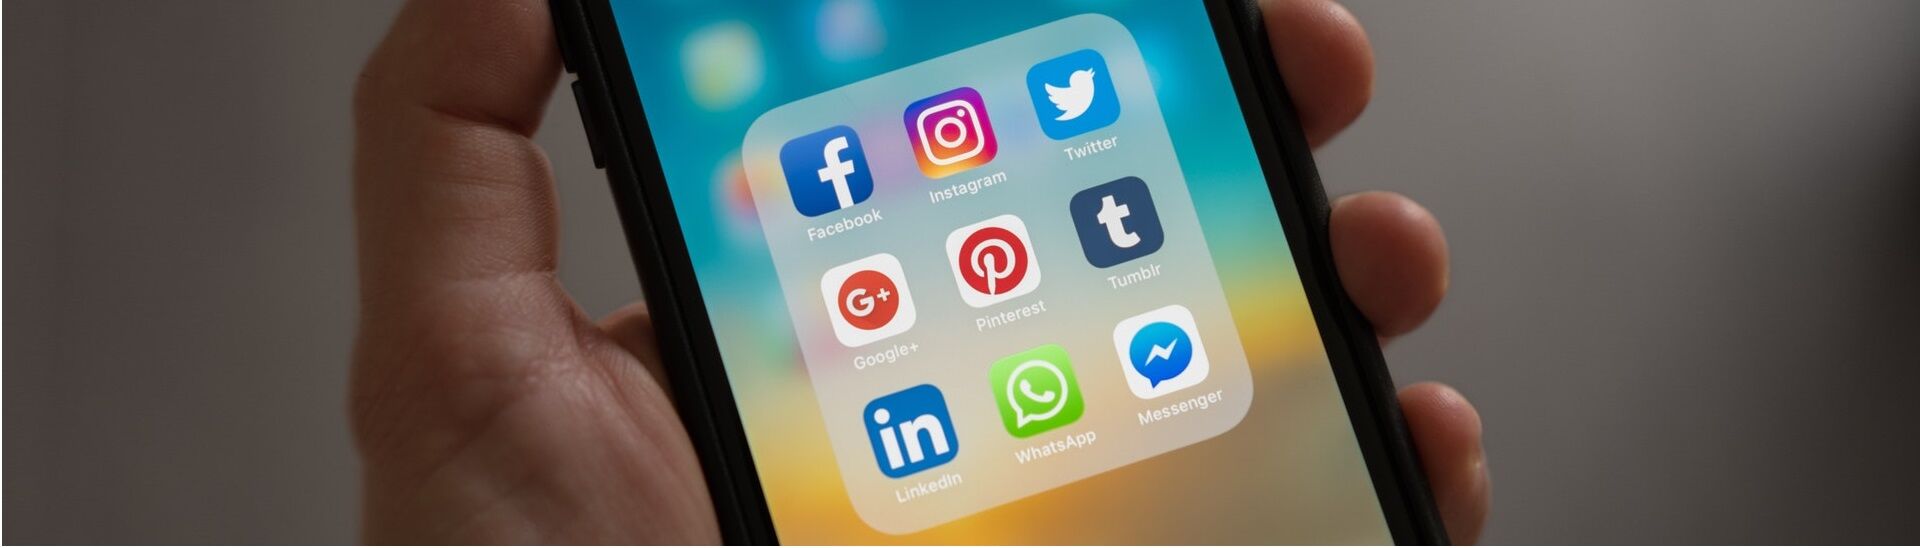 Social Media-Aktivitäten Kopfbereich, Apps auf Smartphone